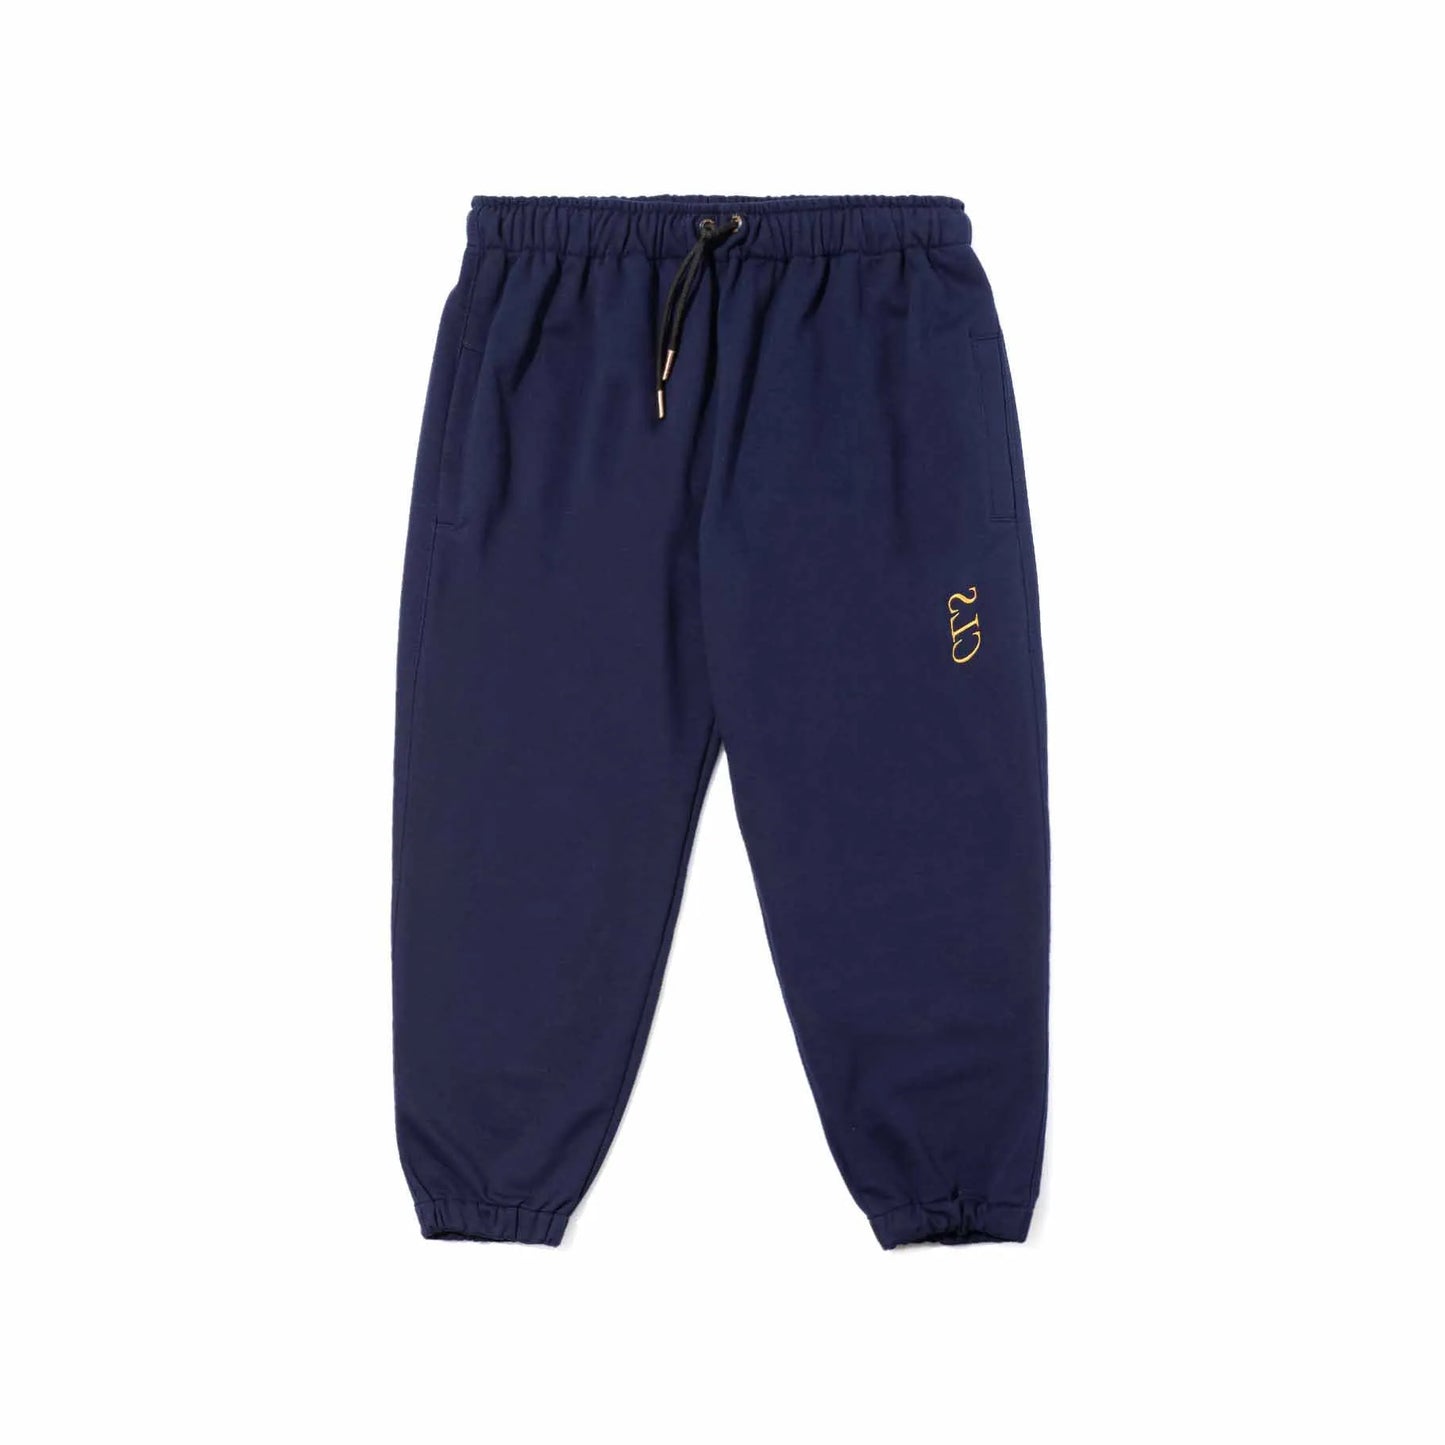 Pants “Paladio” Navy Blue